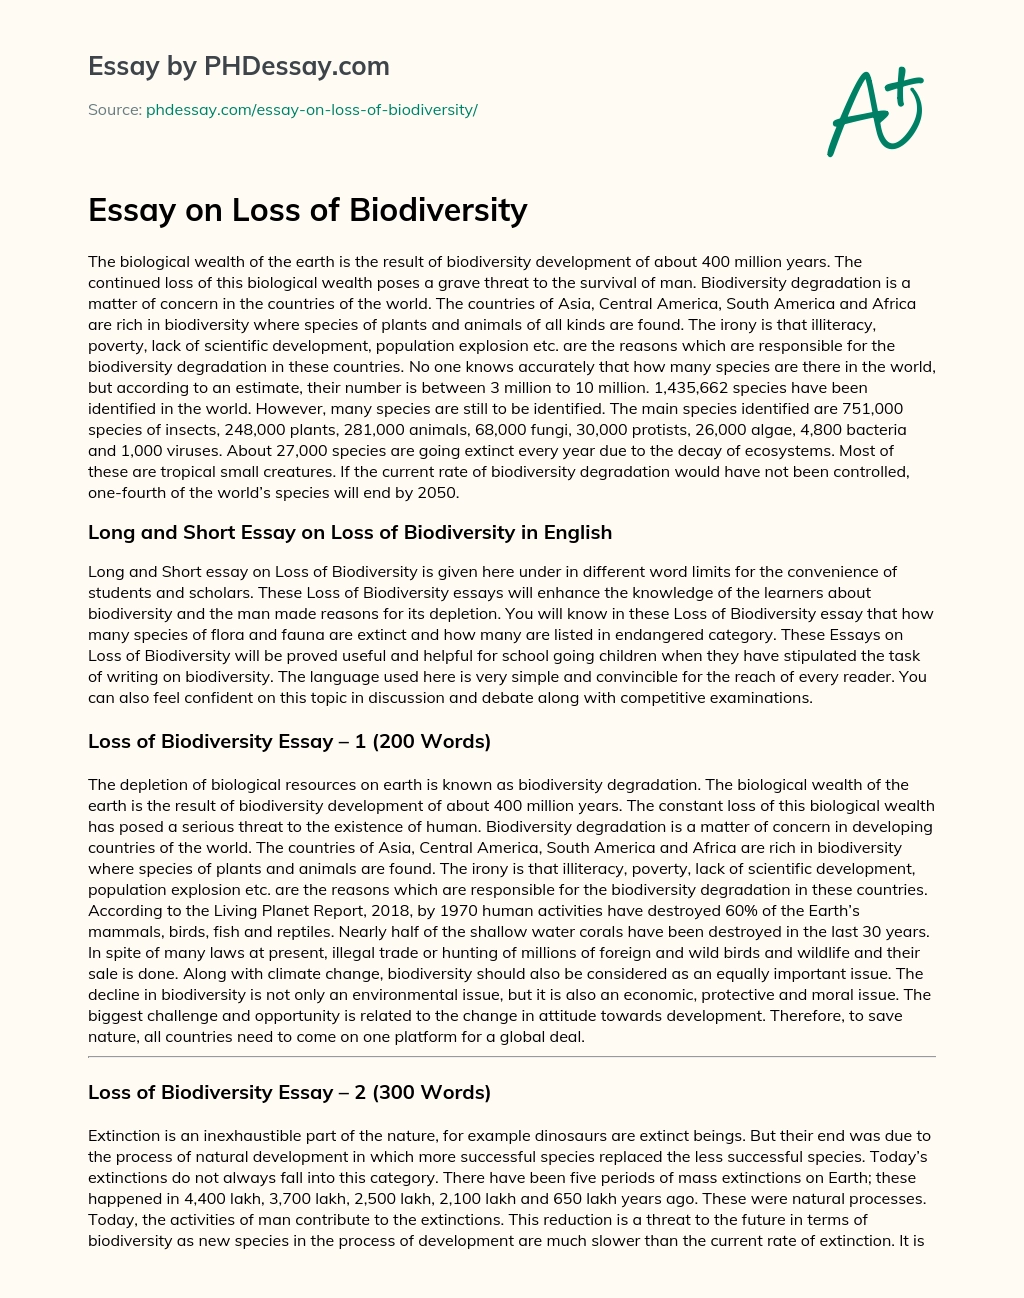 Essay On Loss Of Biodiversity Phdessay Com